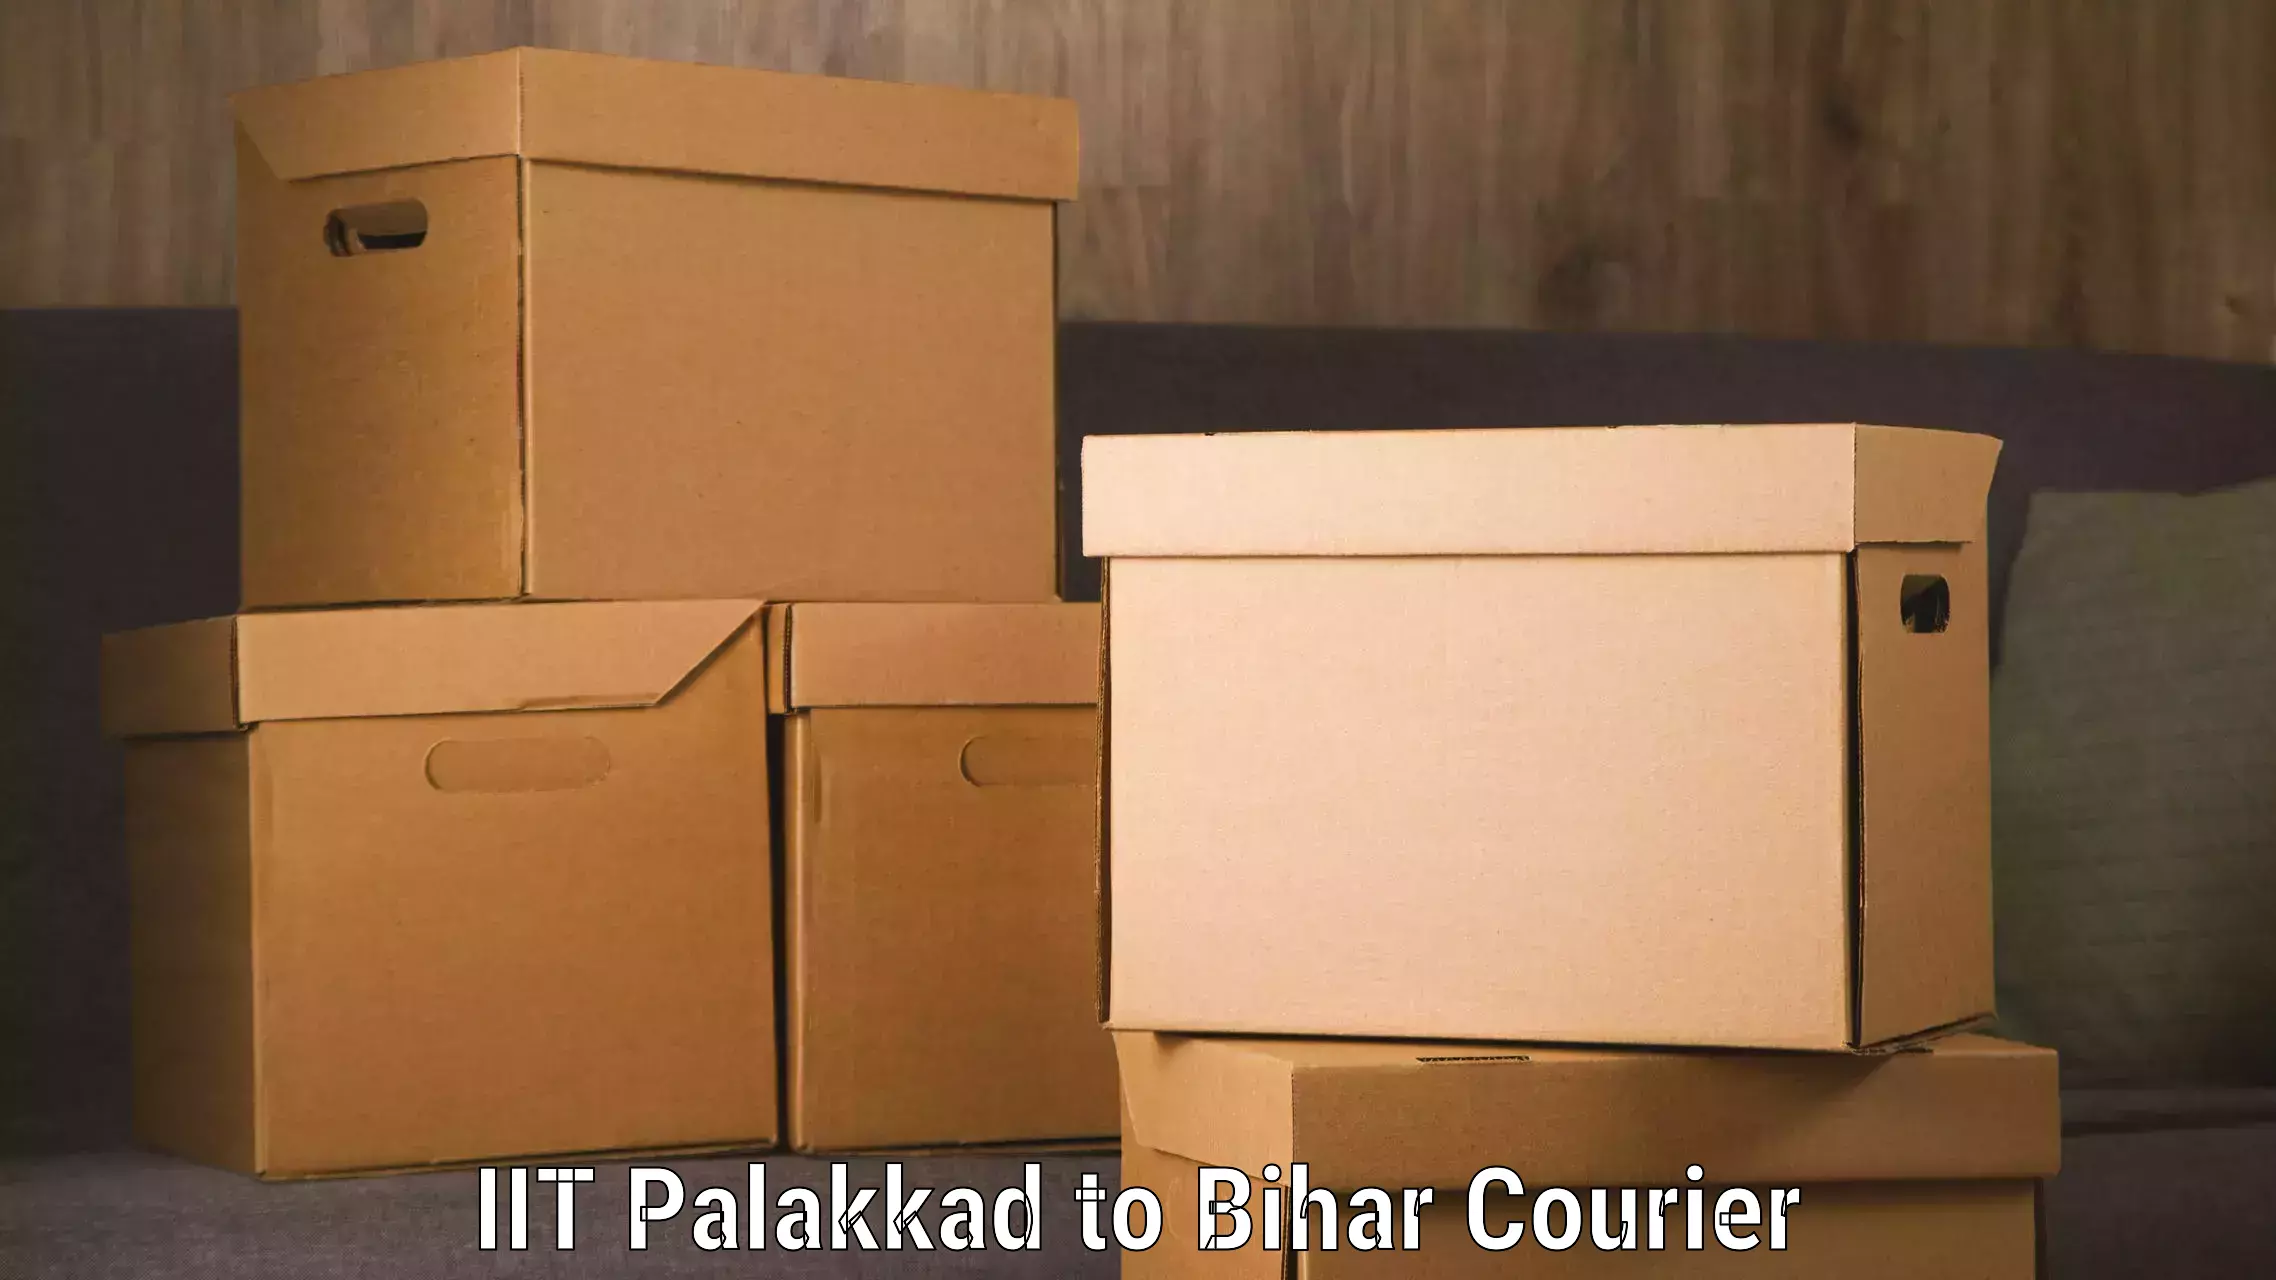 Speedy delivery service IIT Palakkad to Khizarsarai